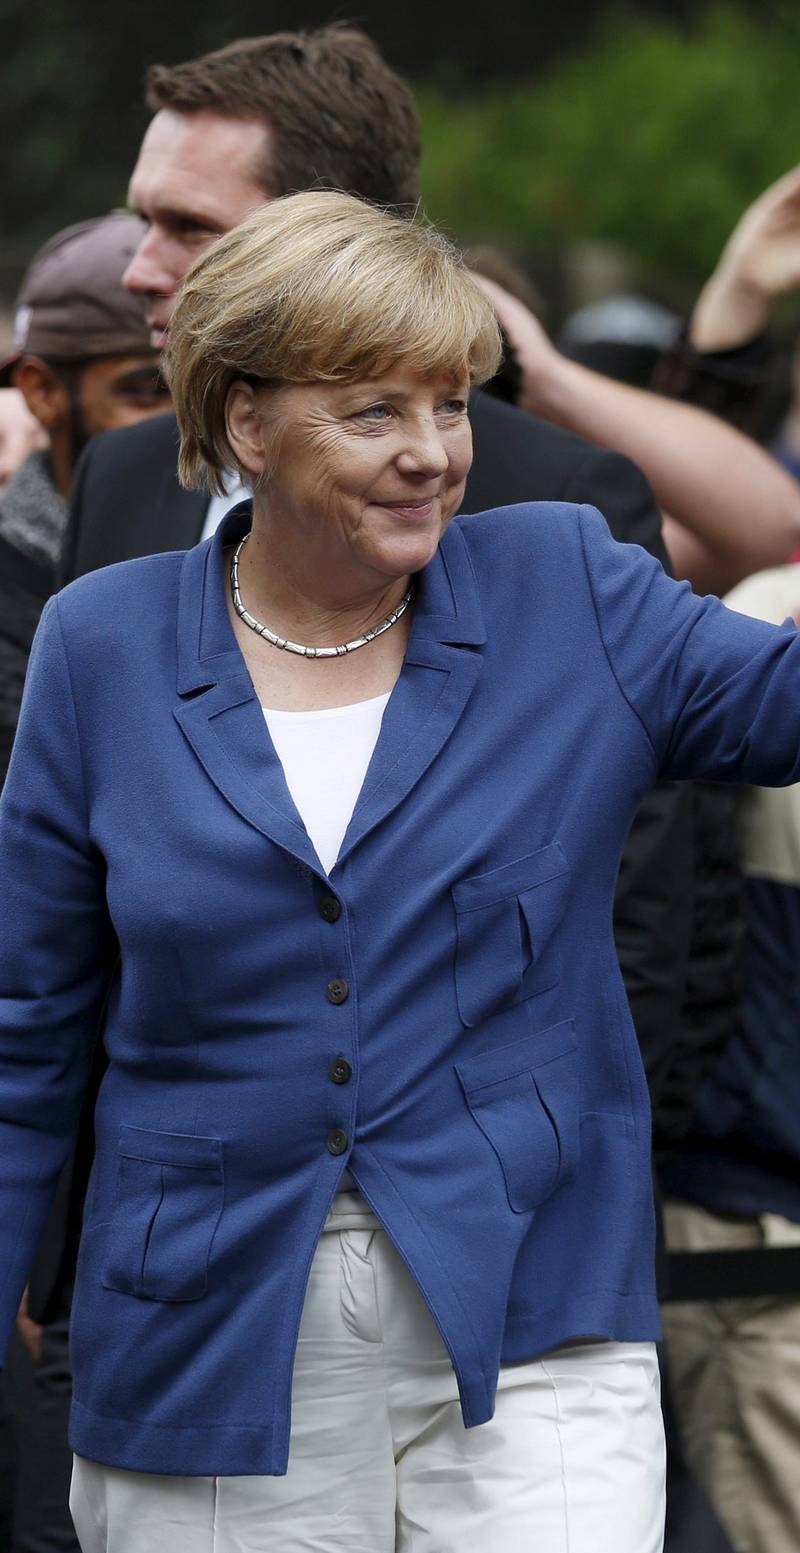 Tysklands statsminister Angela Merkel er rystet over funnet av døde flyktninger i Østerrike. FOTO: NTB SCANPIX